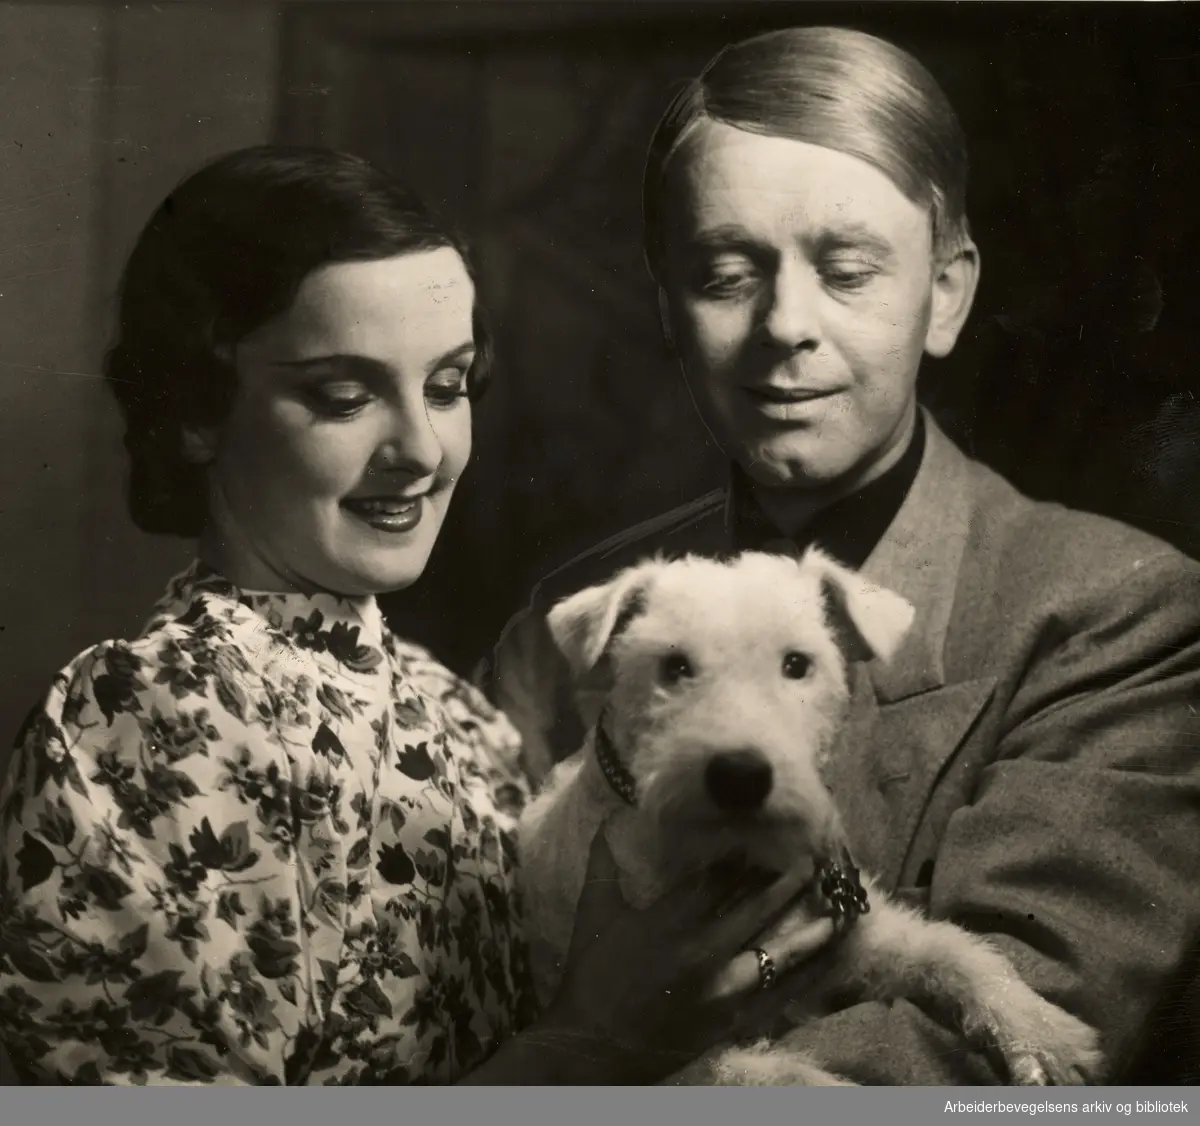 Nanna Stenersen og Per Aabel i stykket "Tjafs" på Centralteatret, juni 1939.